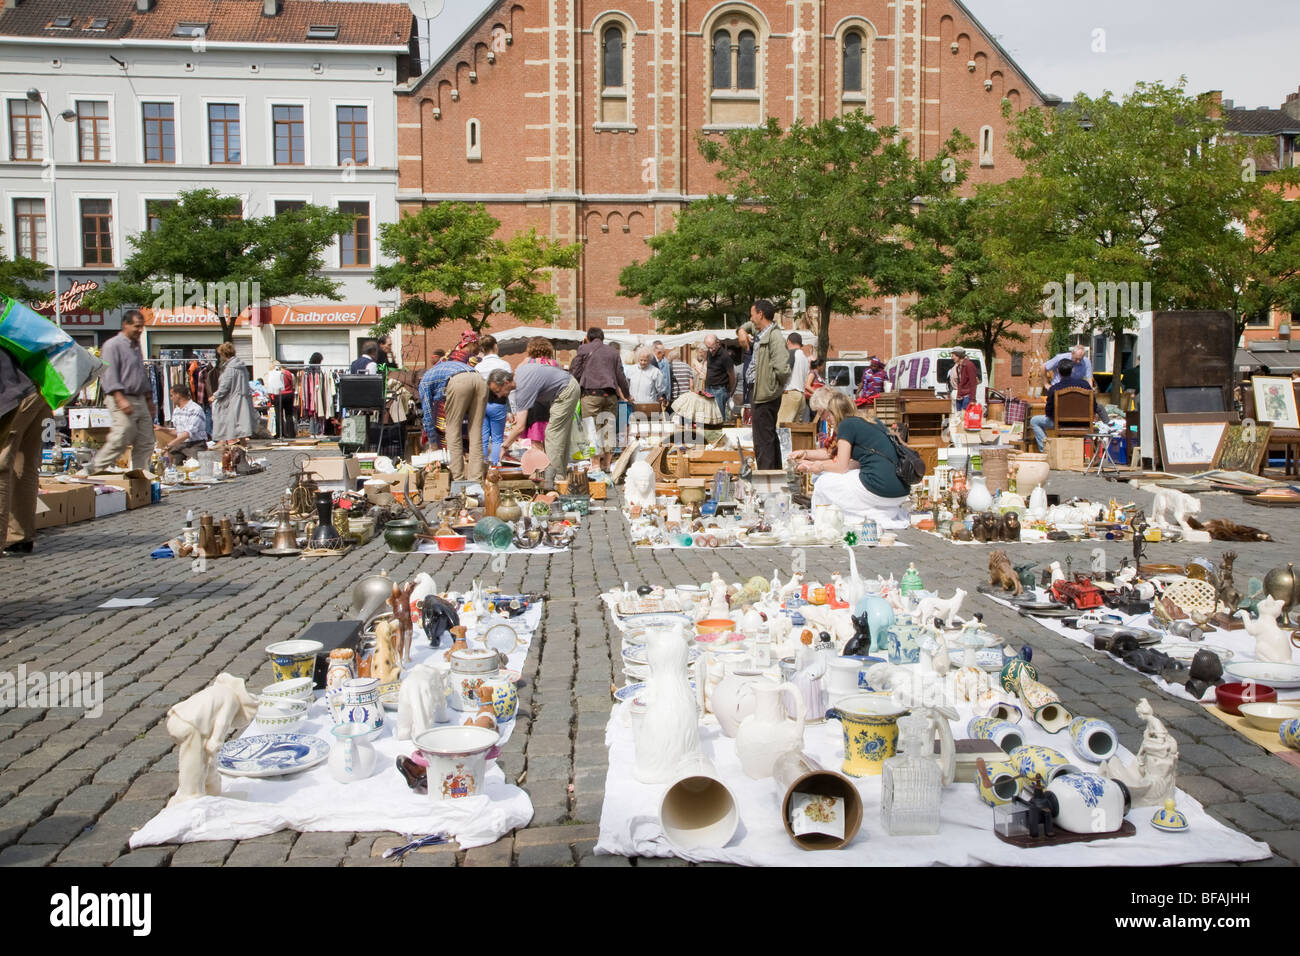 Place de jeu de balle Square, marché aux puces, Marolles, Bruxelles,  Belgique Photo Stock - Alamy